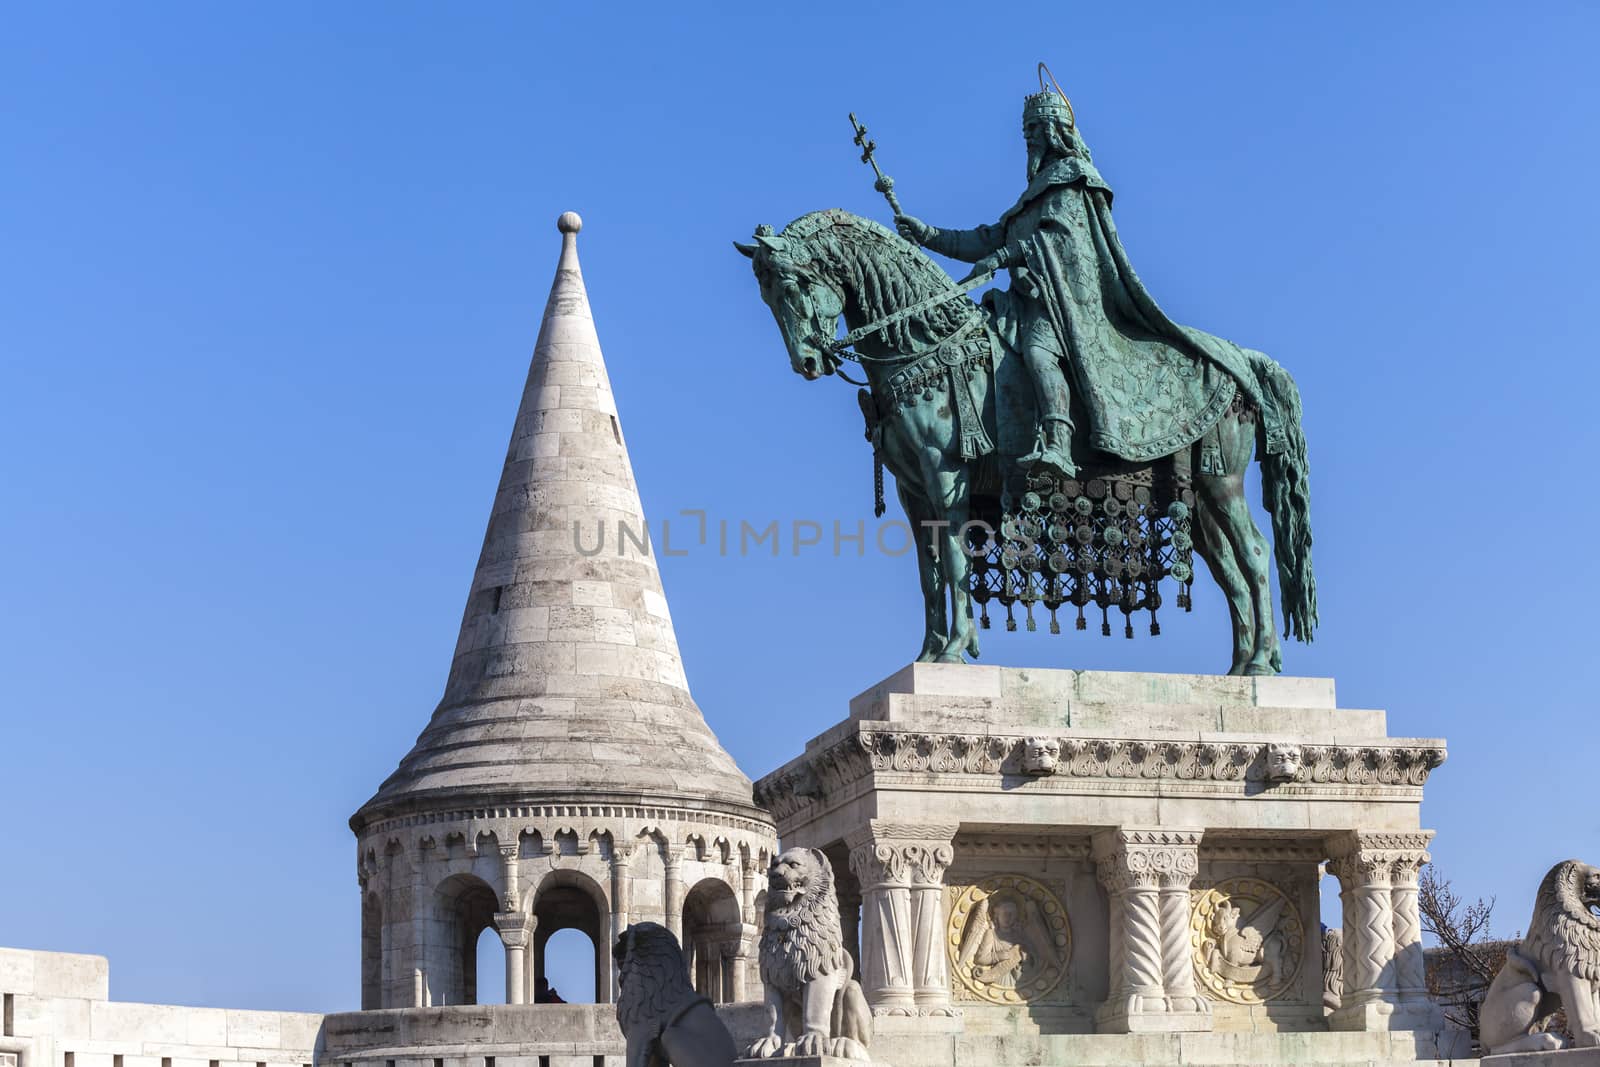 King Stephen horse statue in Fishermen bastion, Budapest